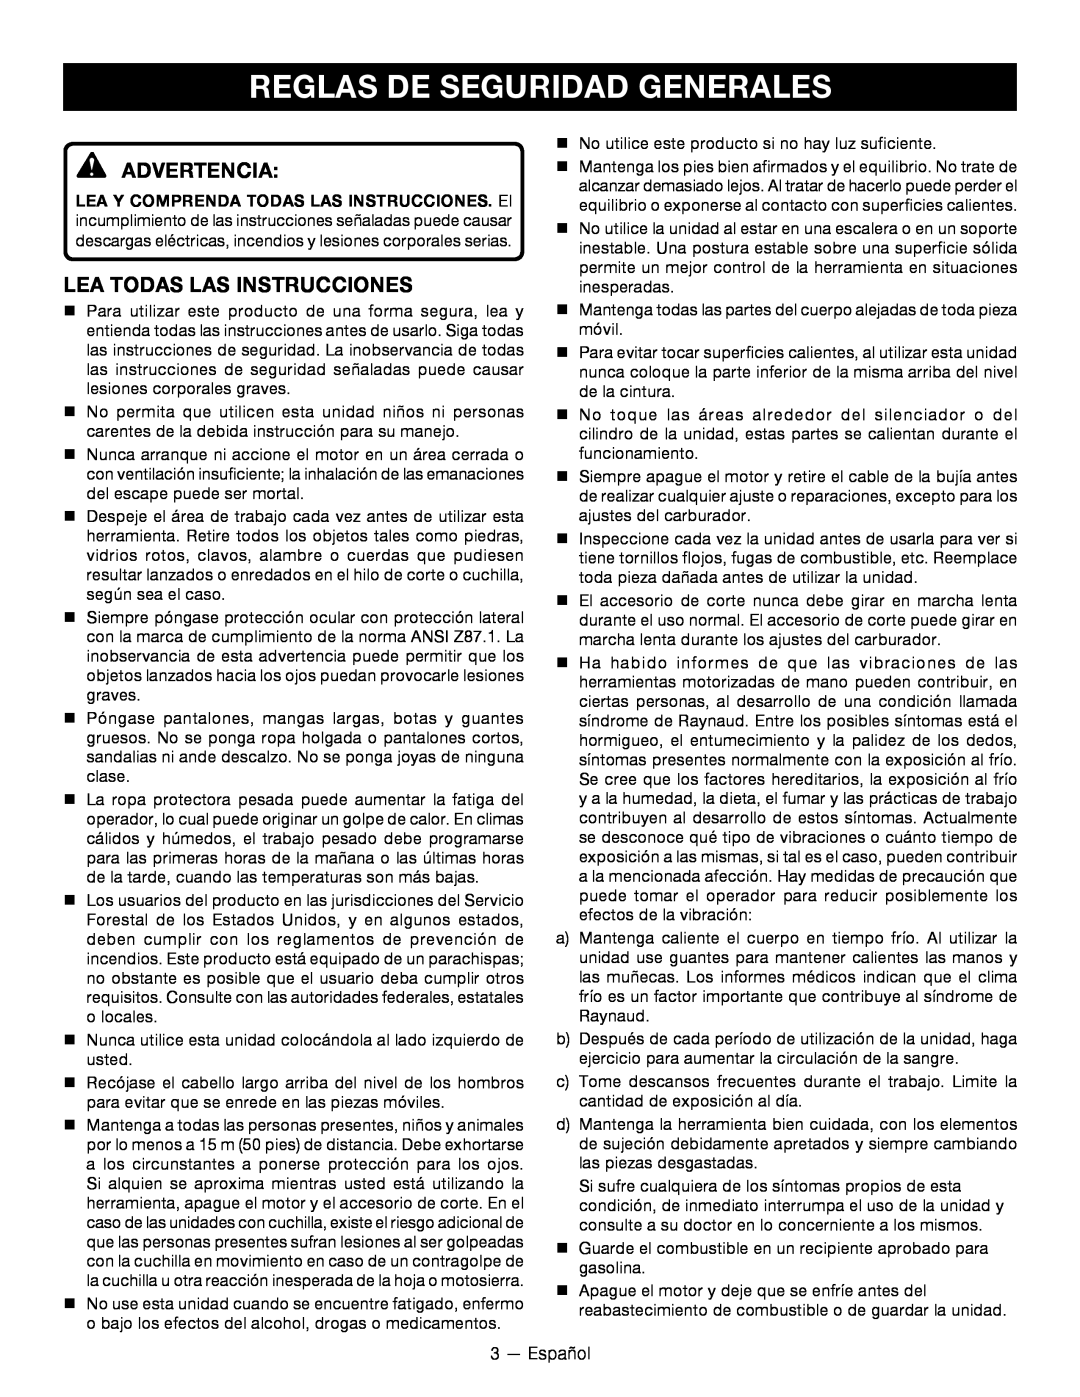 Ryobi RY34001 manuel dutilisation Reglas De Seguridad Generales, Advertencia, Lea Todas Las Instrucciones 